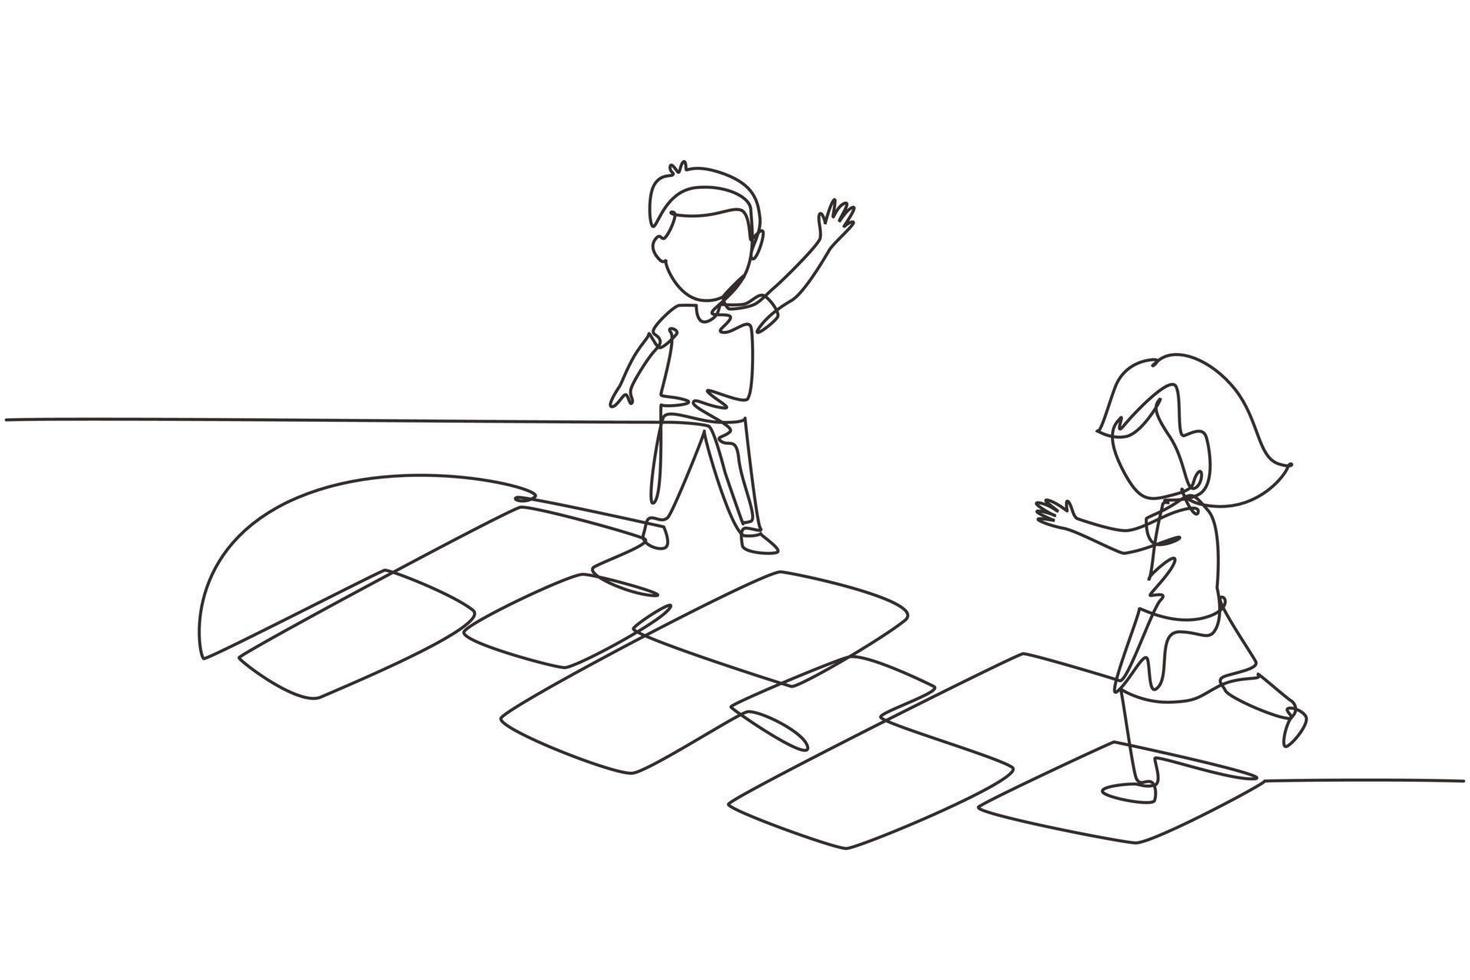 einzelne durchgehende Linie zeichnet kleine Mädchen und Jungen, die auf dem Kindergartenhof Hopse spielen. glückliche kinder hüpfen auf dem spielplatz. Hop Scotch Court mit Kreide gezeichnet. eine linie zeichnen grafikdesignvektor vektor